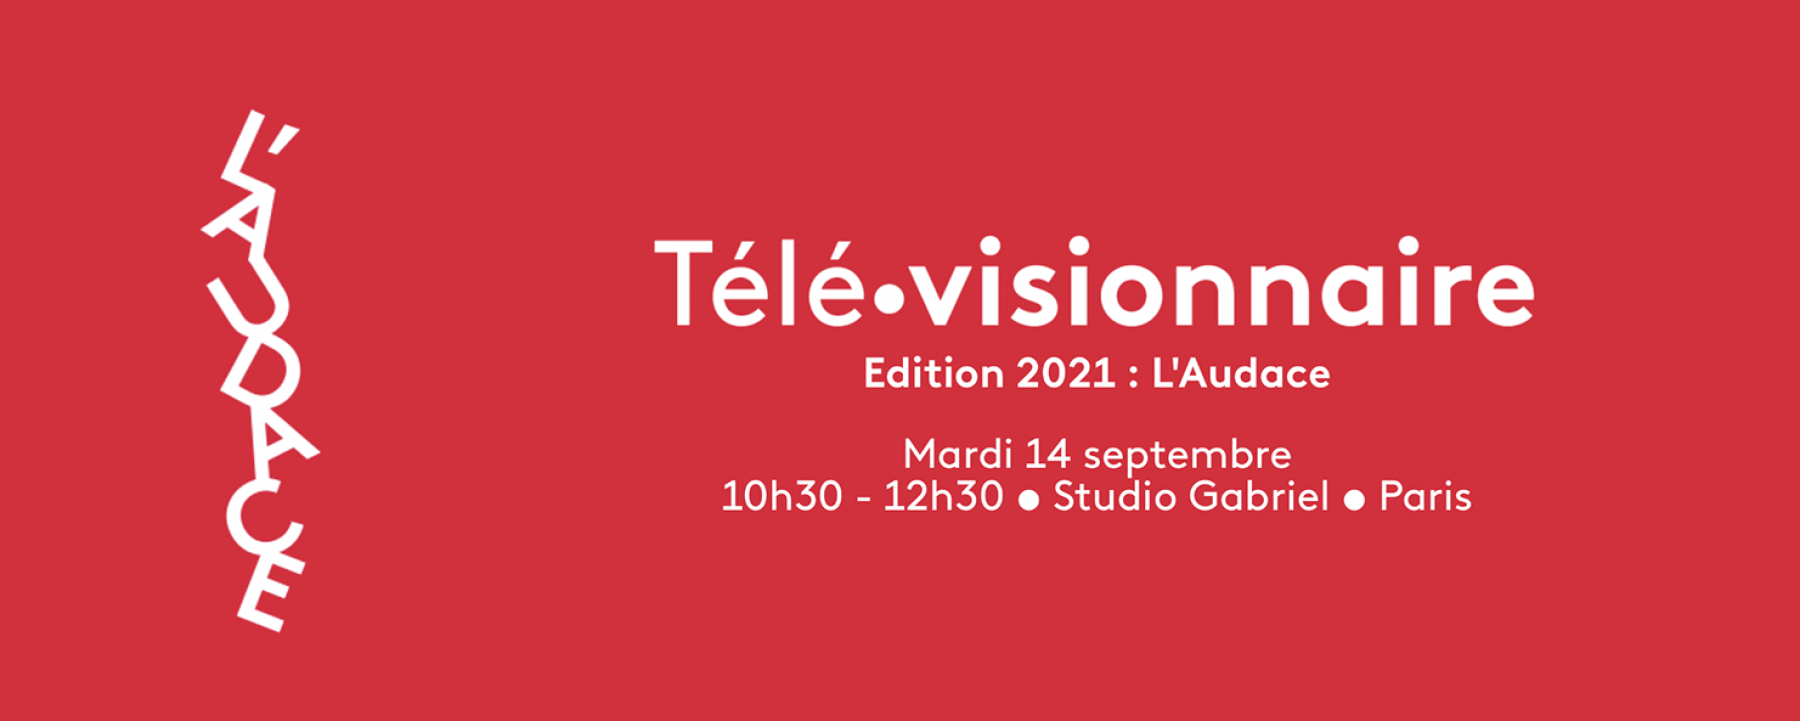 Télé•visionnaire 2021, le 14 septembre organisé par FranceTV Publicité